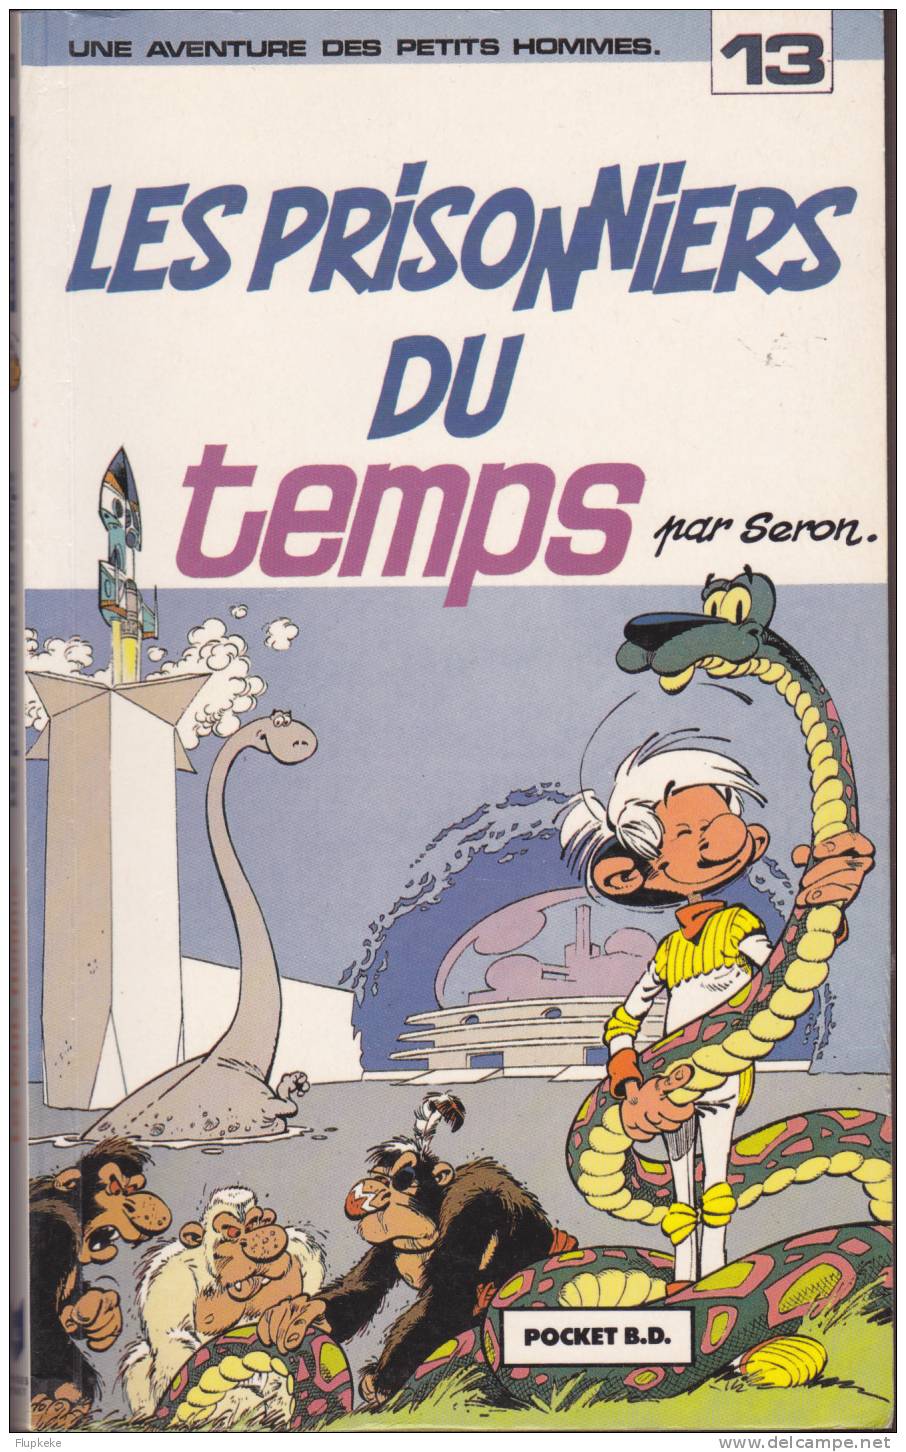 Pocket BD 7091 Les Petits Hommes Les Prisonniers Du Temps Seron 1991 - Petits Hommes, Les